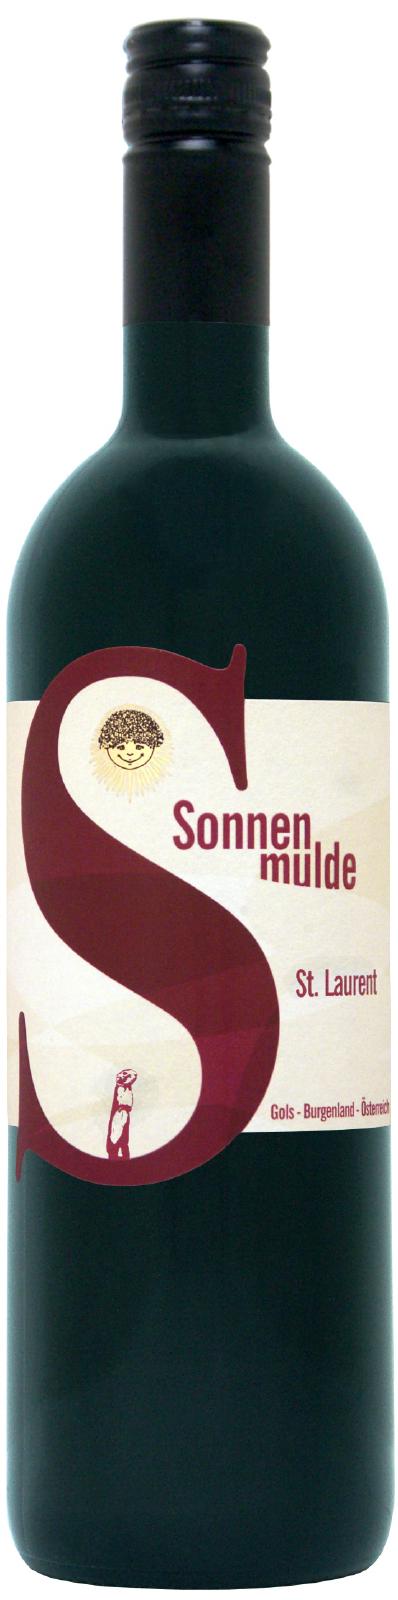 Eine Flasche St. Laurent